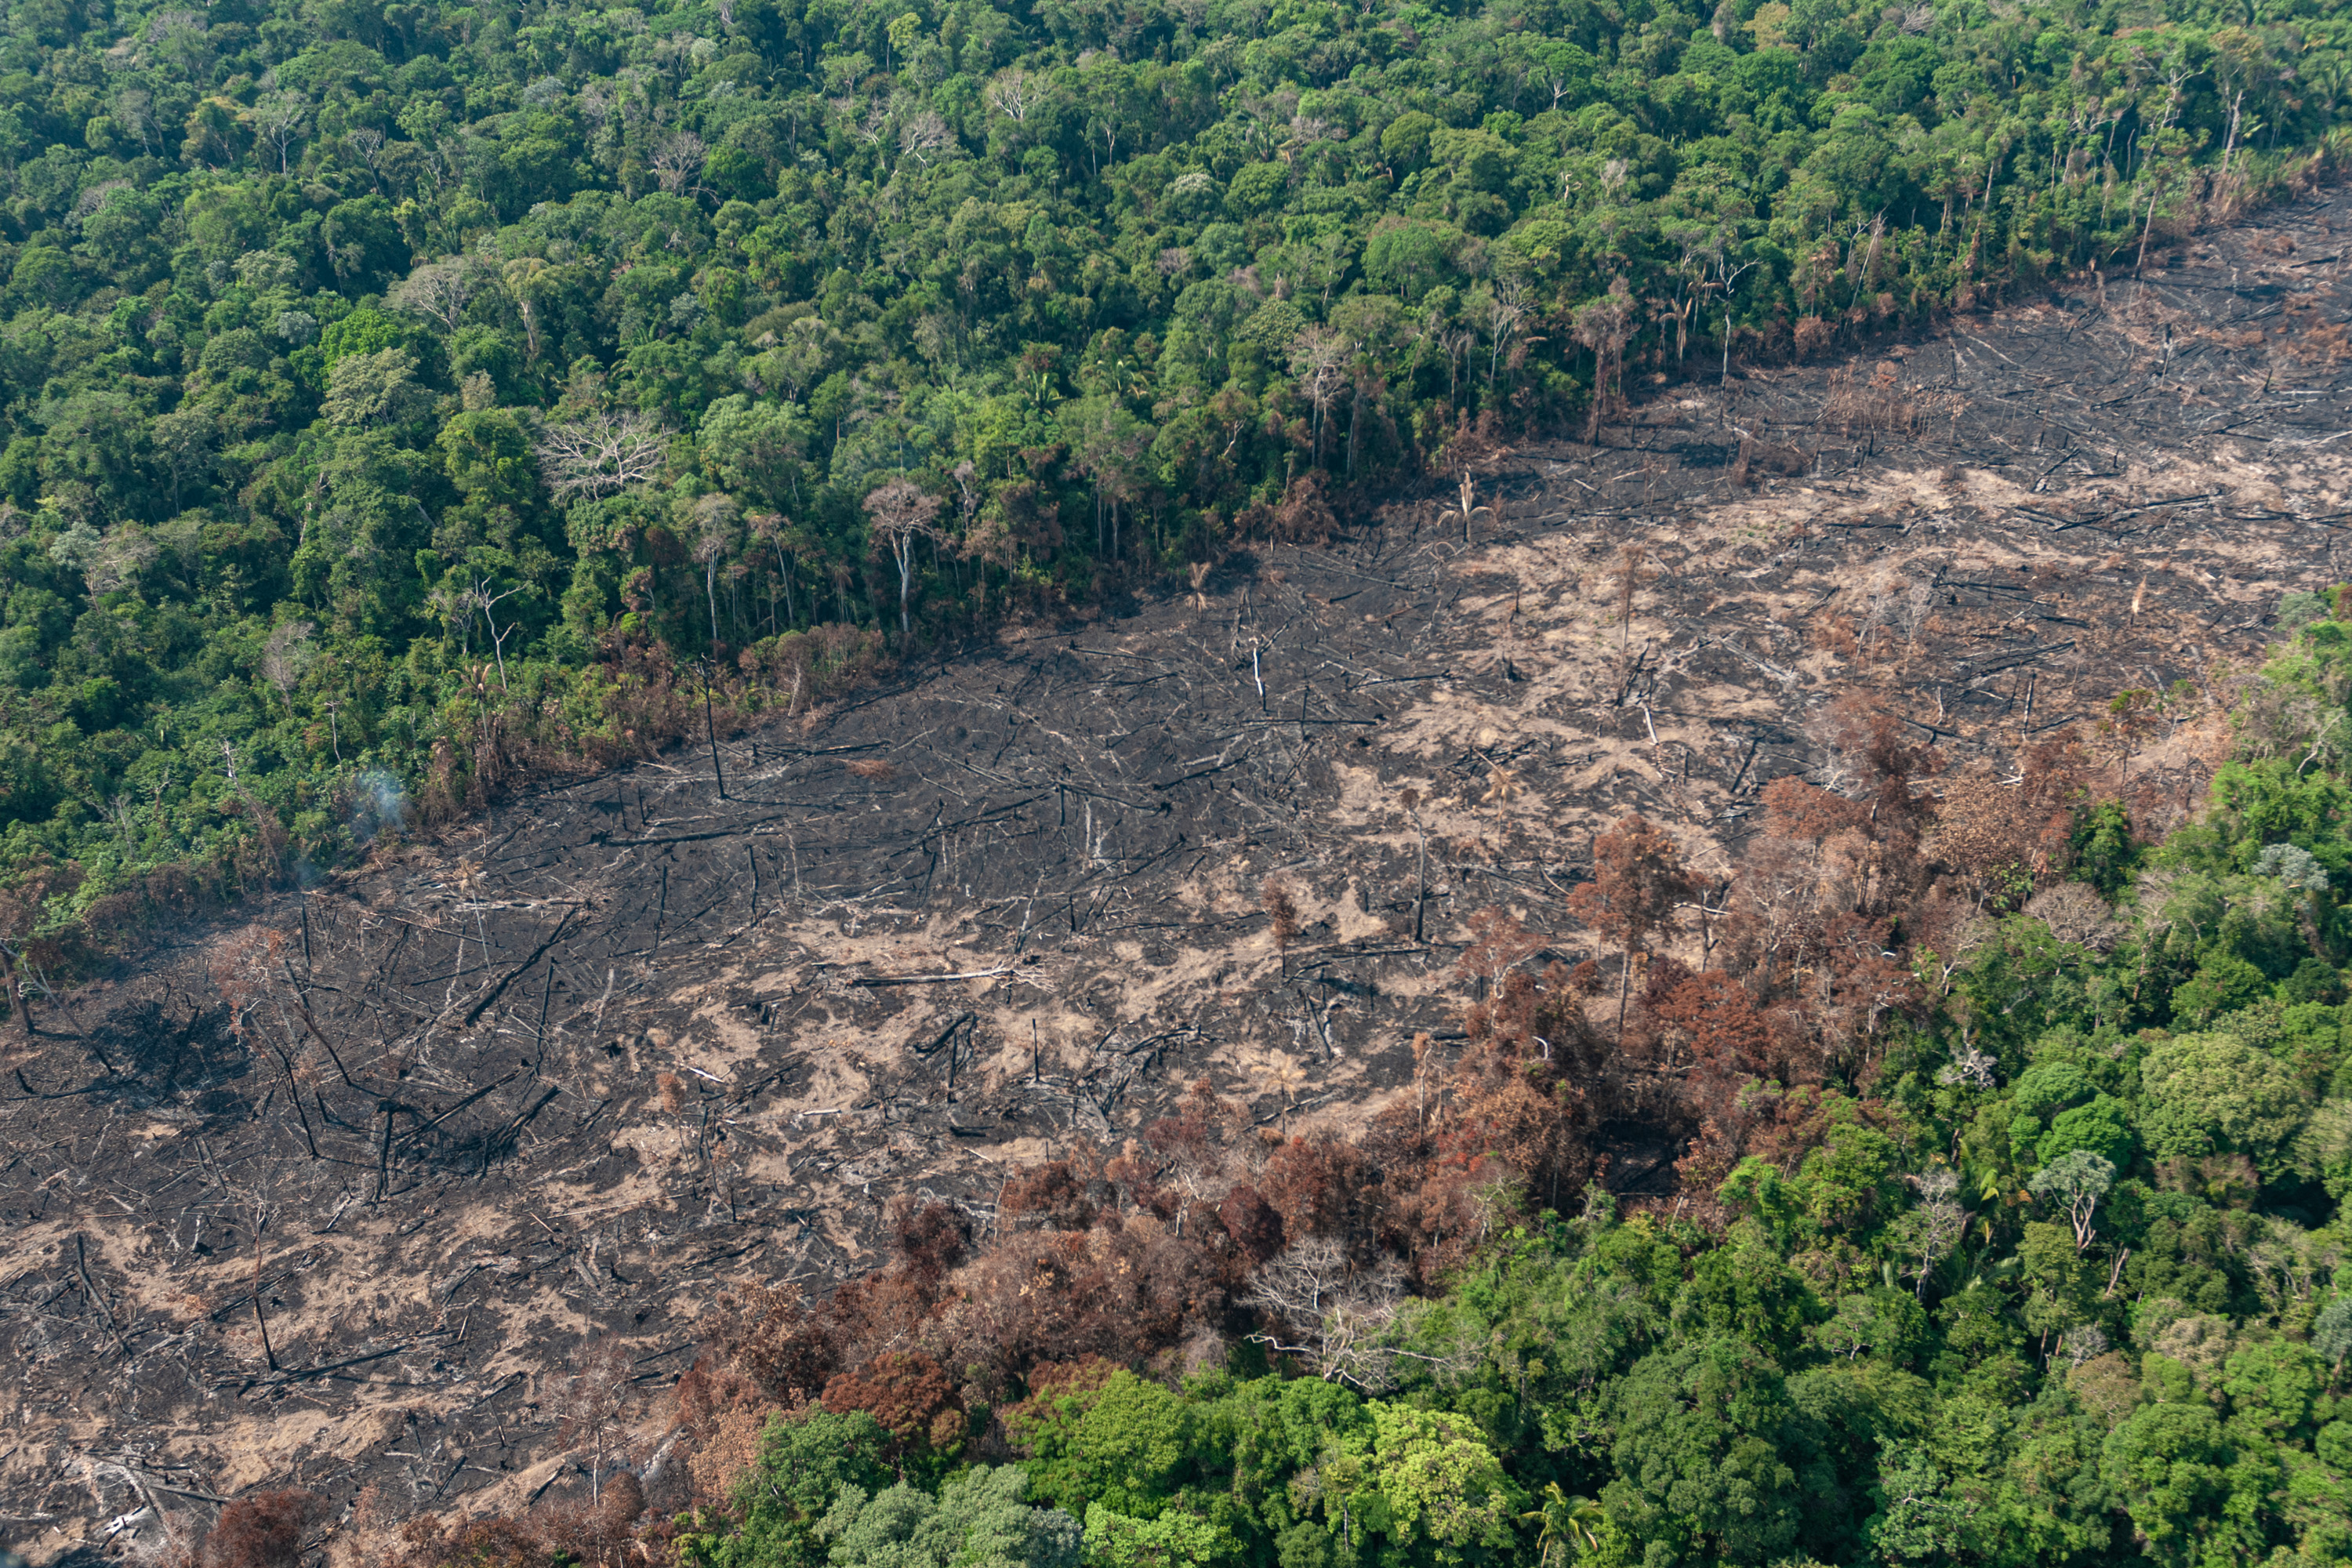 Desmatamento na amazônia mobiliza senadores nas redes sociais — senado  notícias